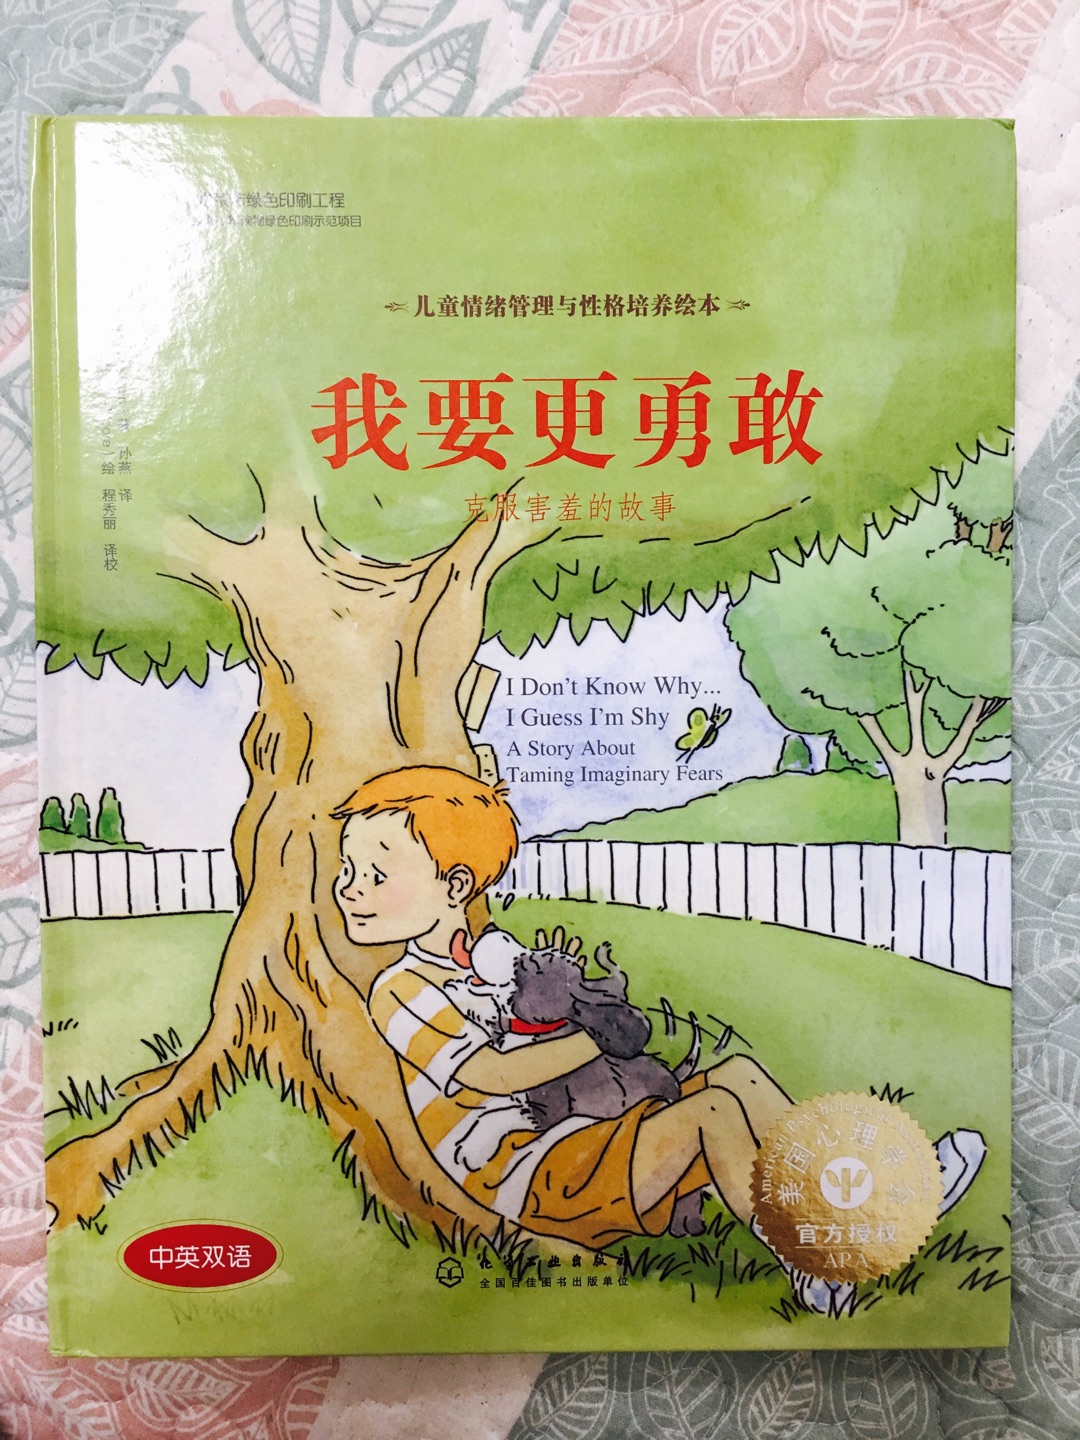 中文内容三十来页，其中25页是故事正文，后面是给父母的建议，书的内容还是很积极向上的，蕴含道理与方法，书得印刷质量也挺好，唯一的缺点就是价格不好